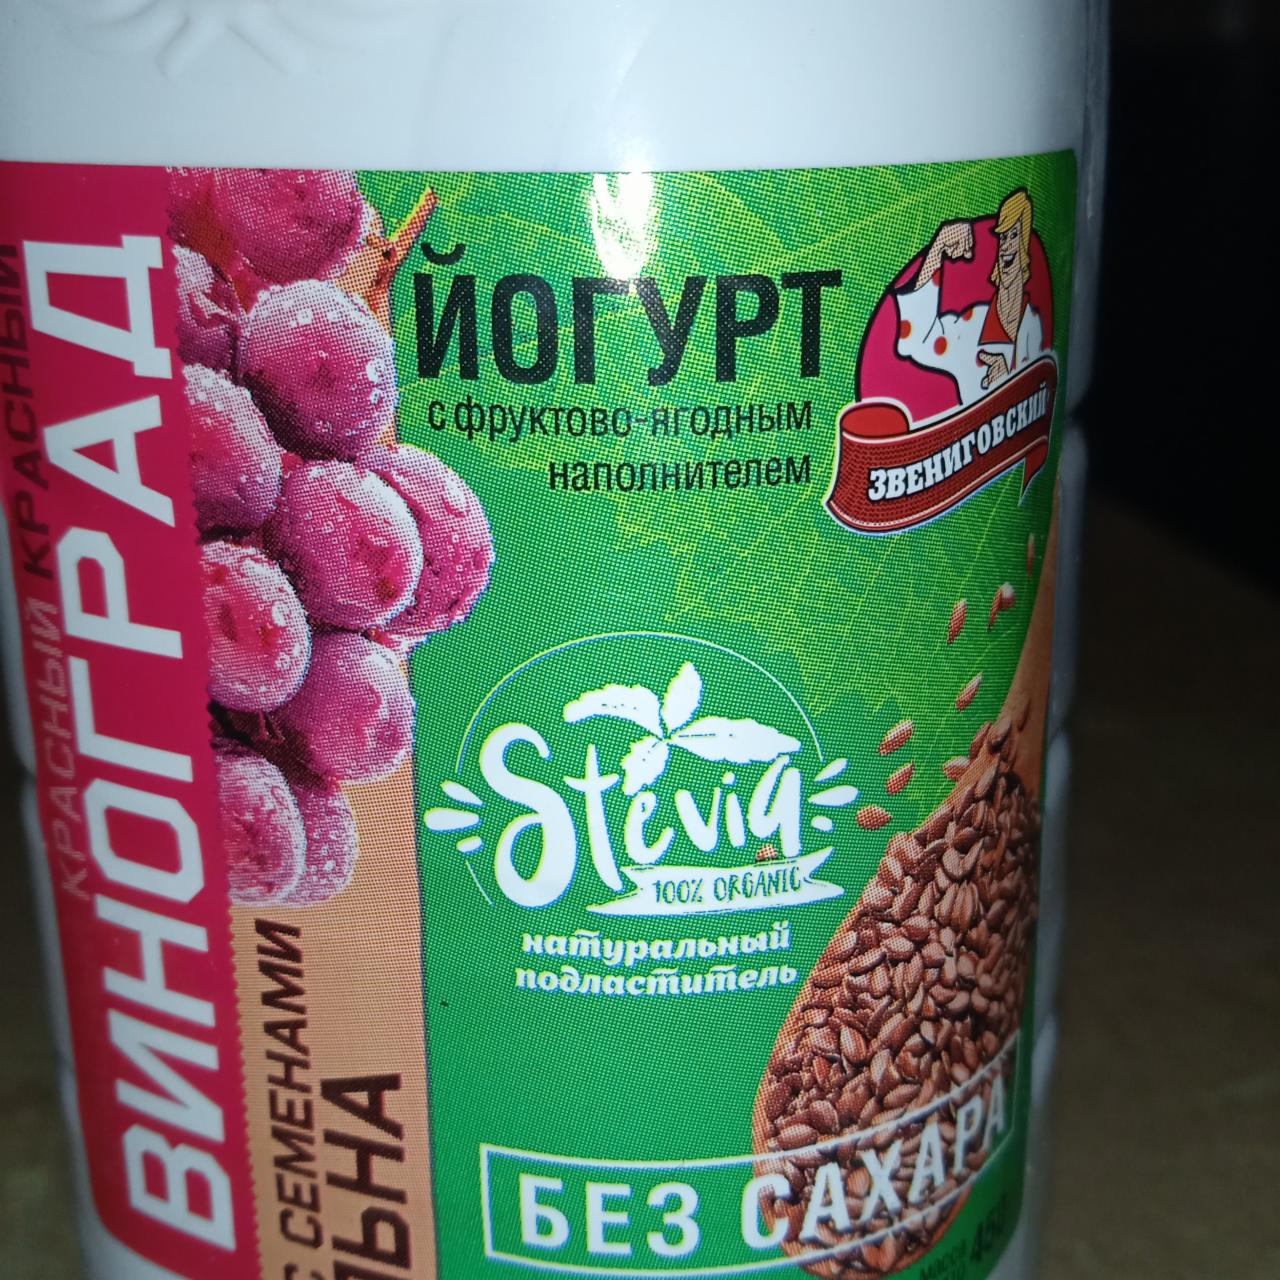 Фото - Йогурт с фруктово-ягодным наполнителем красный виноград с семенами льна Звениговский